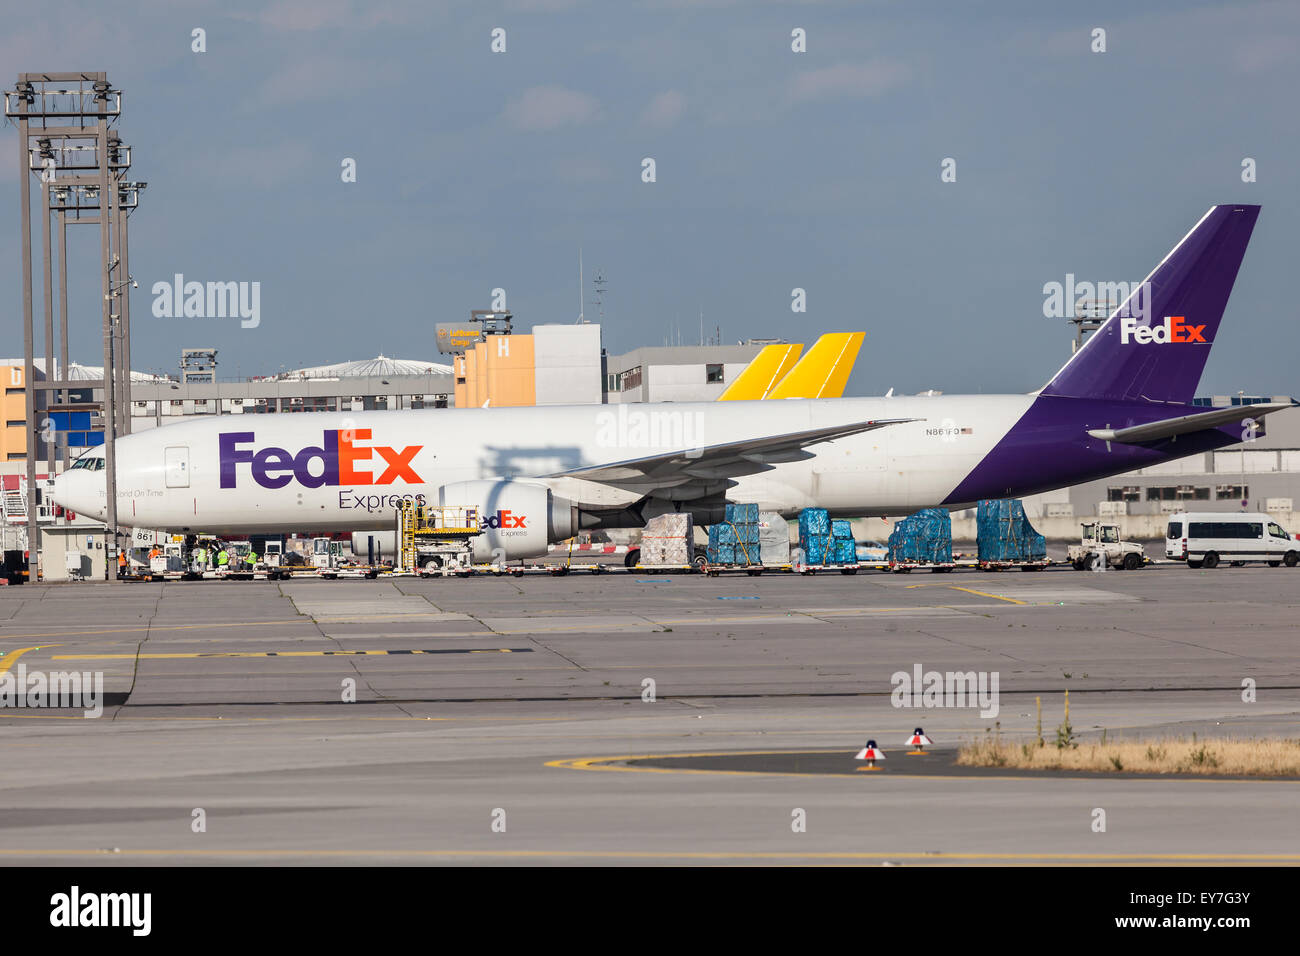 FedEx Express aeromobile presso il terminal merci dell'aeroporto internazionale di Francoforte Foto Stock